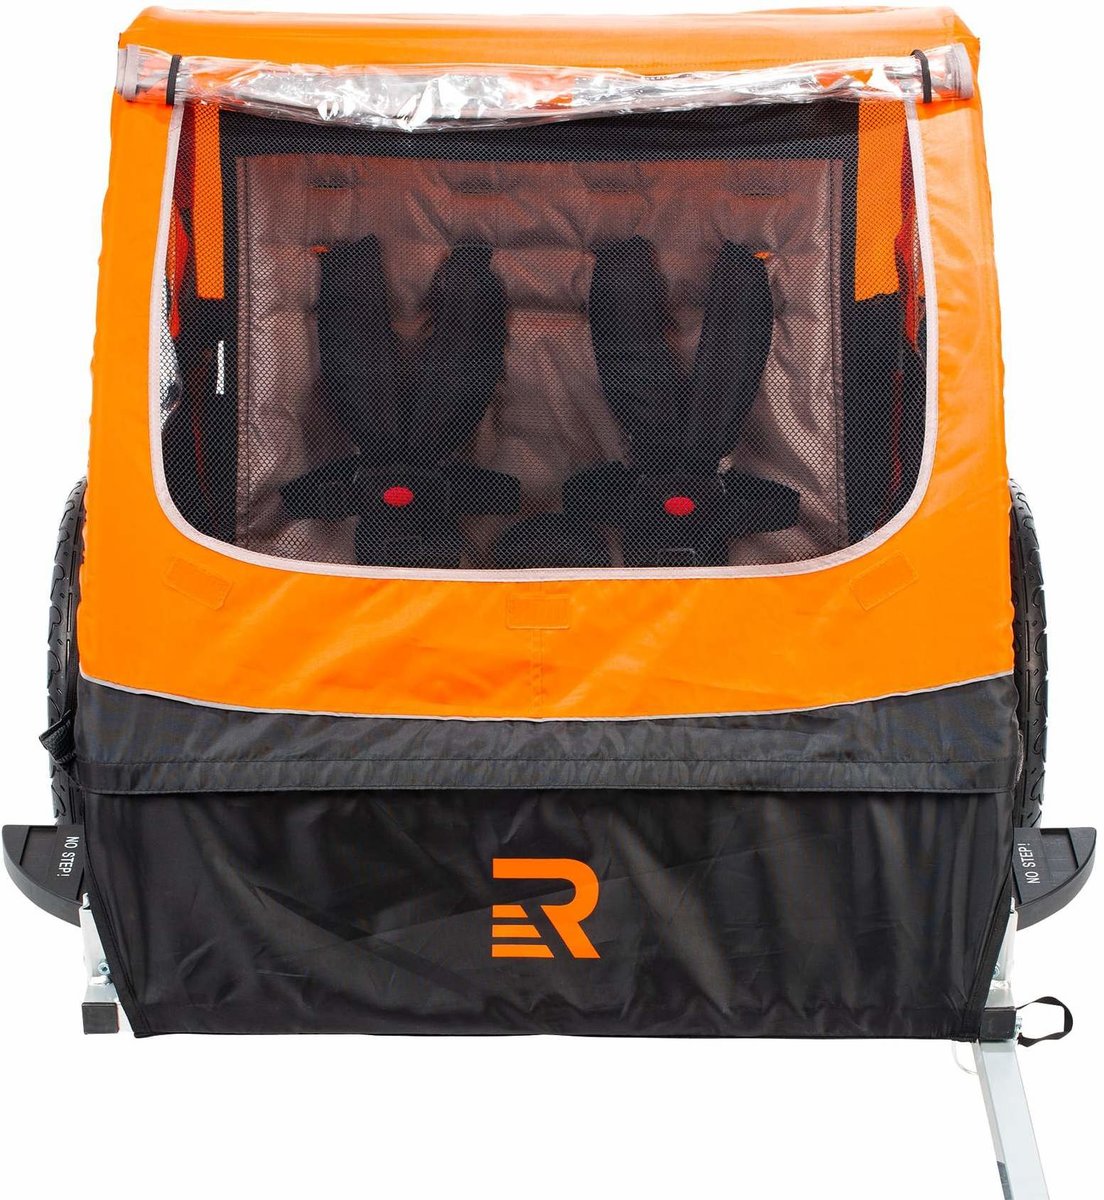 retrospec rover passenger children's foldable bike trailer